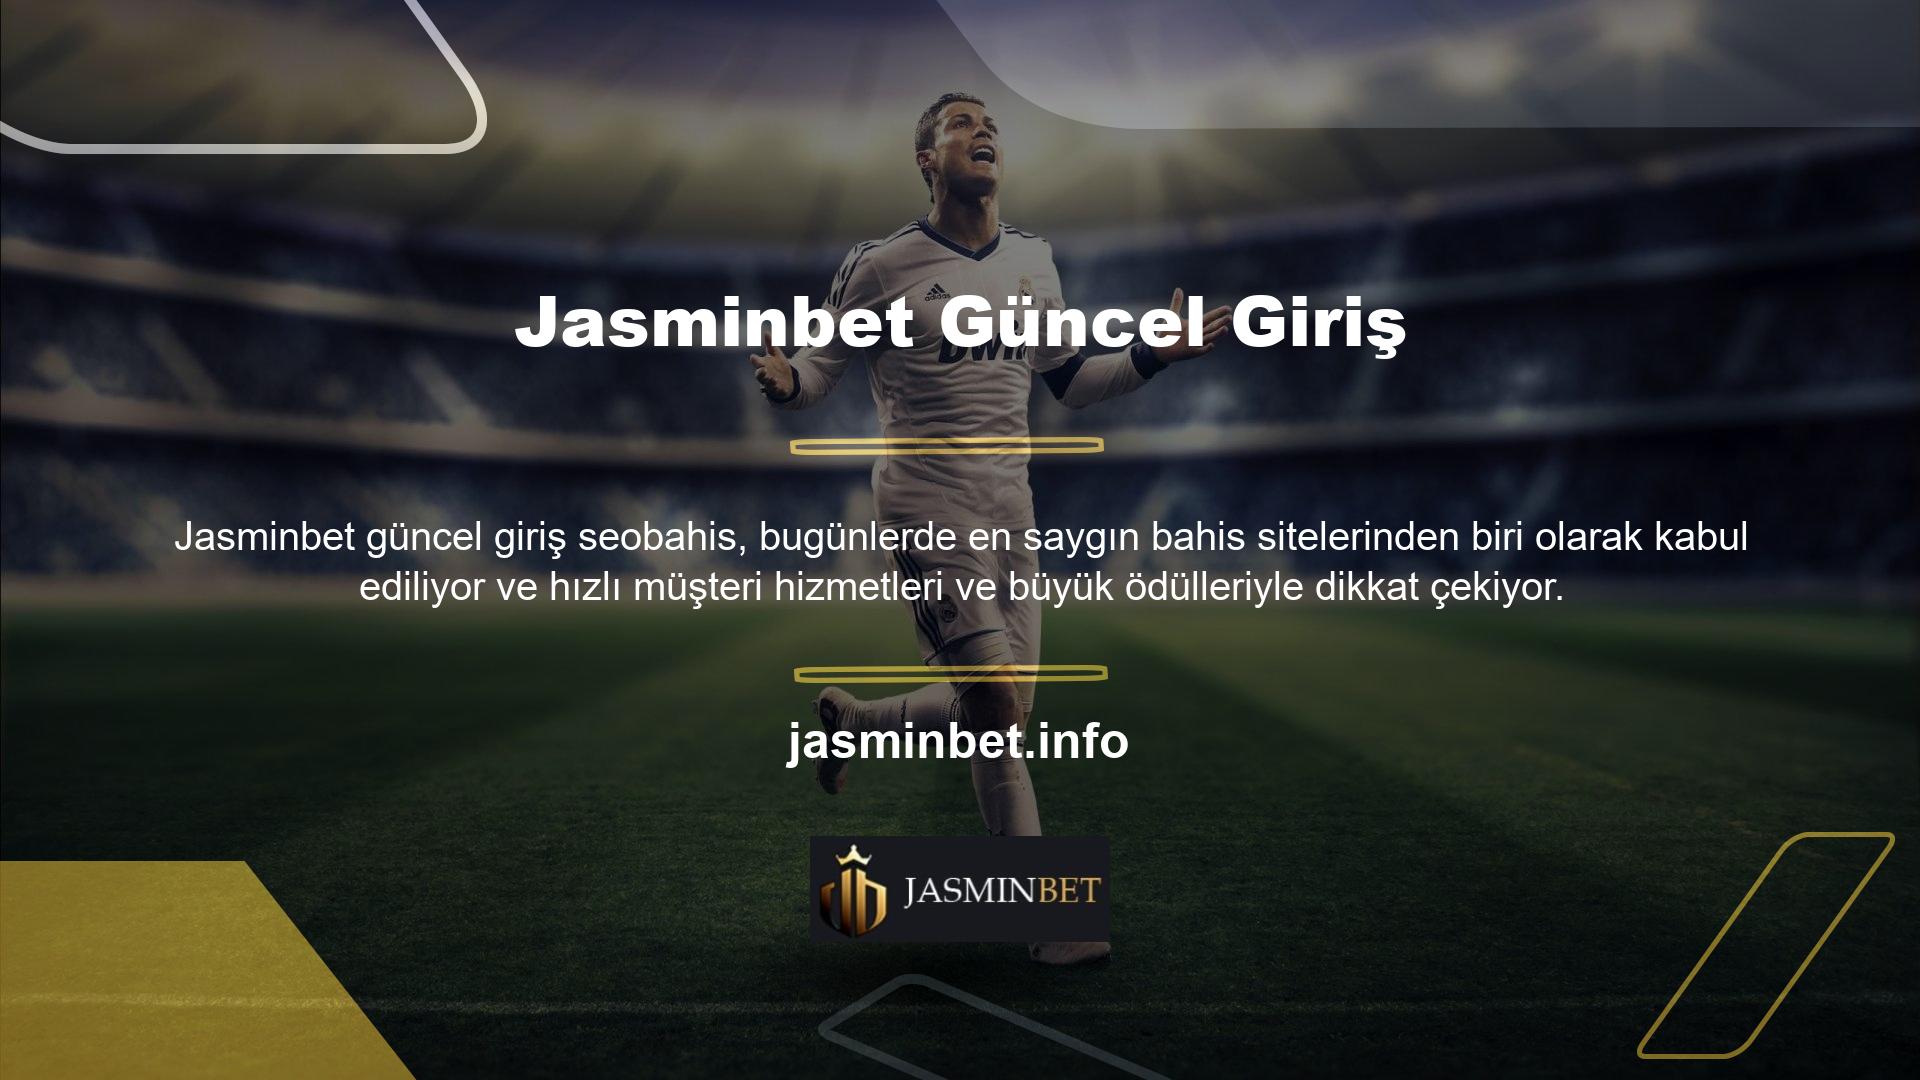 Bu sayfanın birçok Jasminbet Twitter hesabının ilgisini çekmesi ve her geçen gün daha fazla kişi tarafından beğenilmesi nedeniyle hedef listeye eklendi